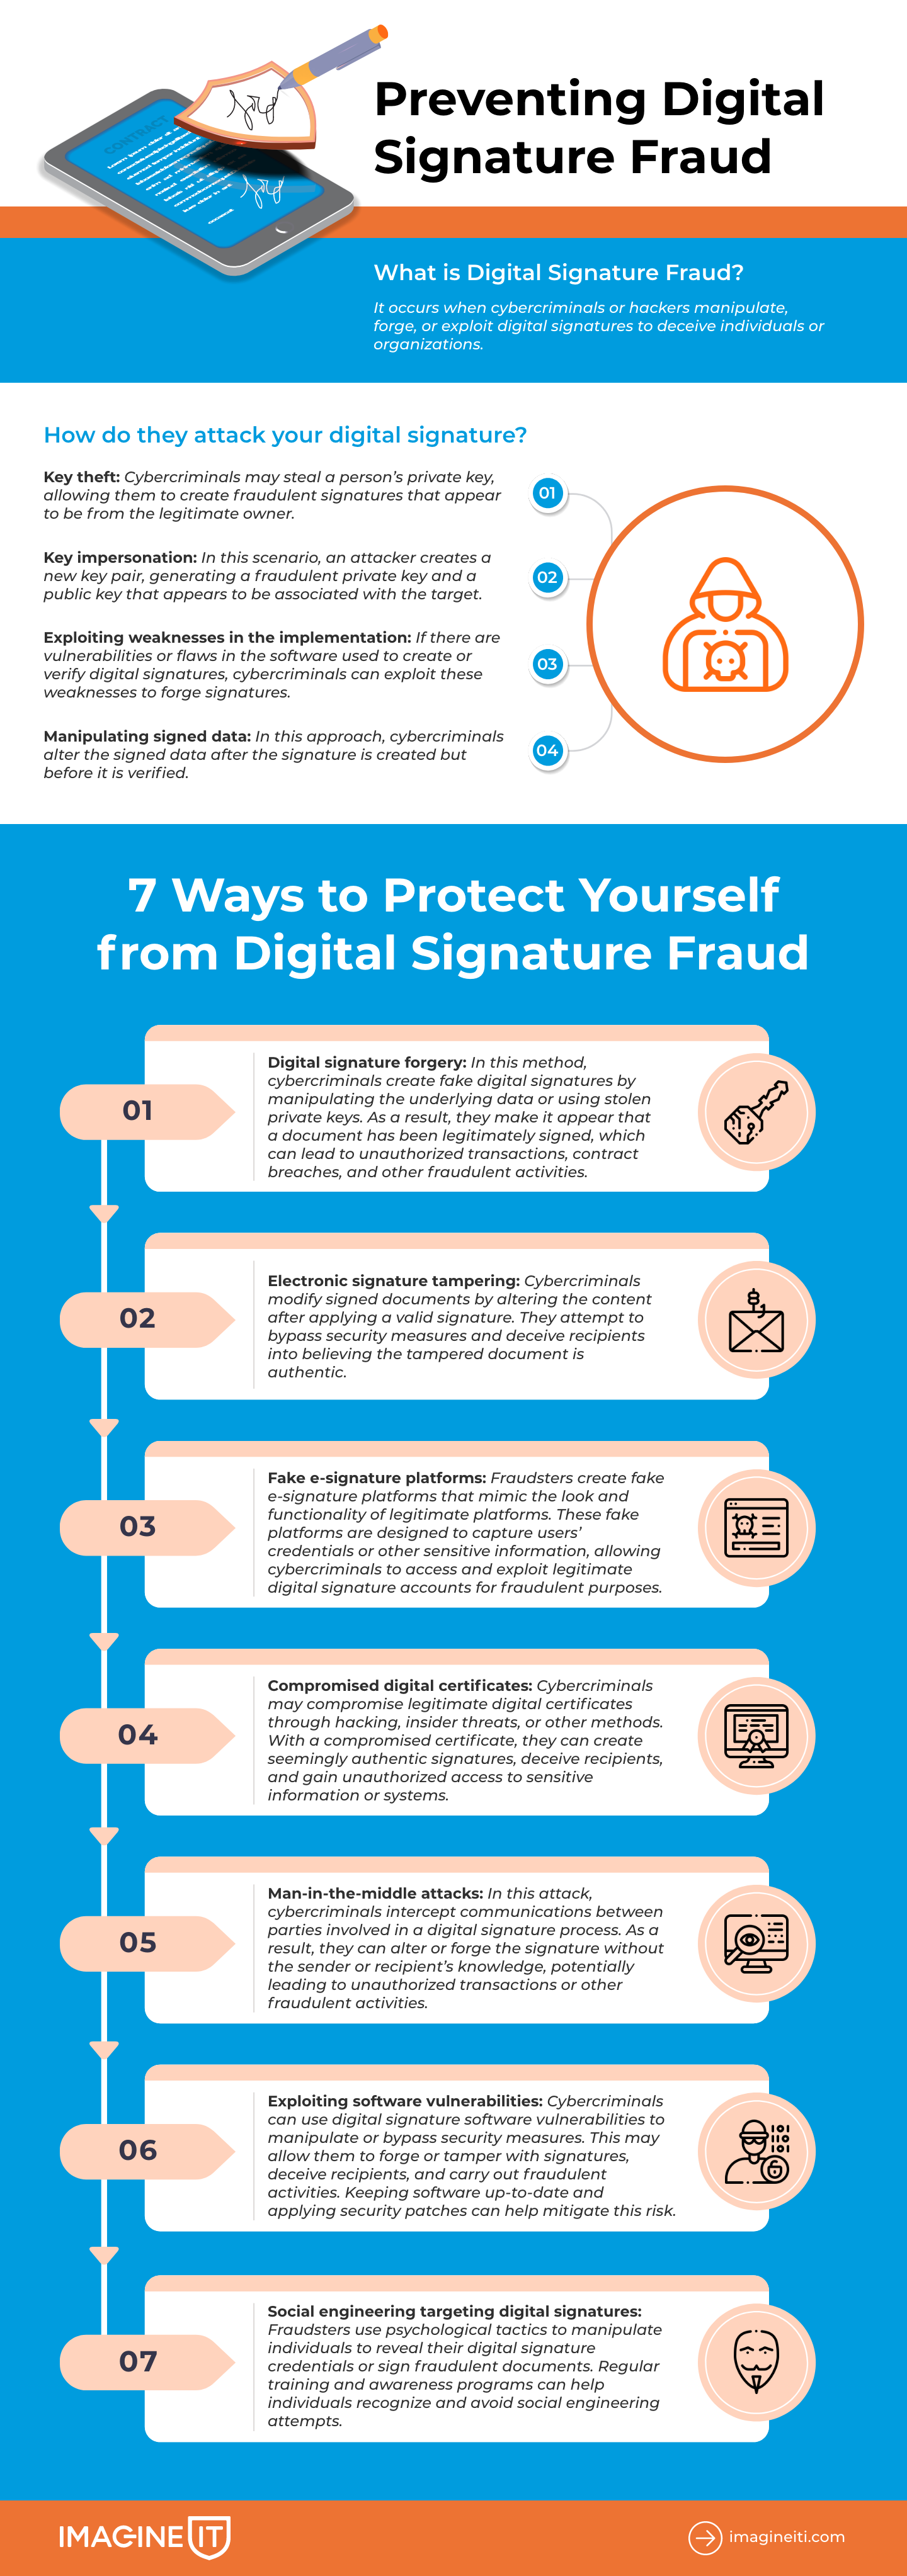 Preventing Digital Signature Fraud